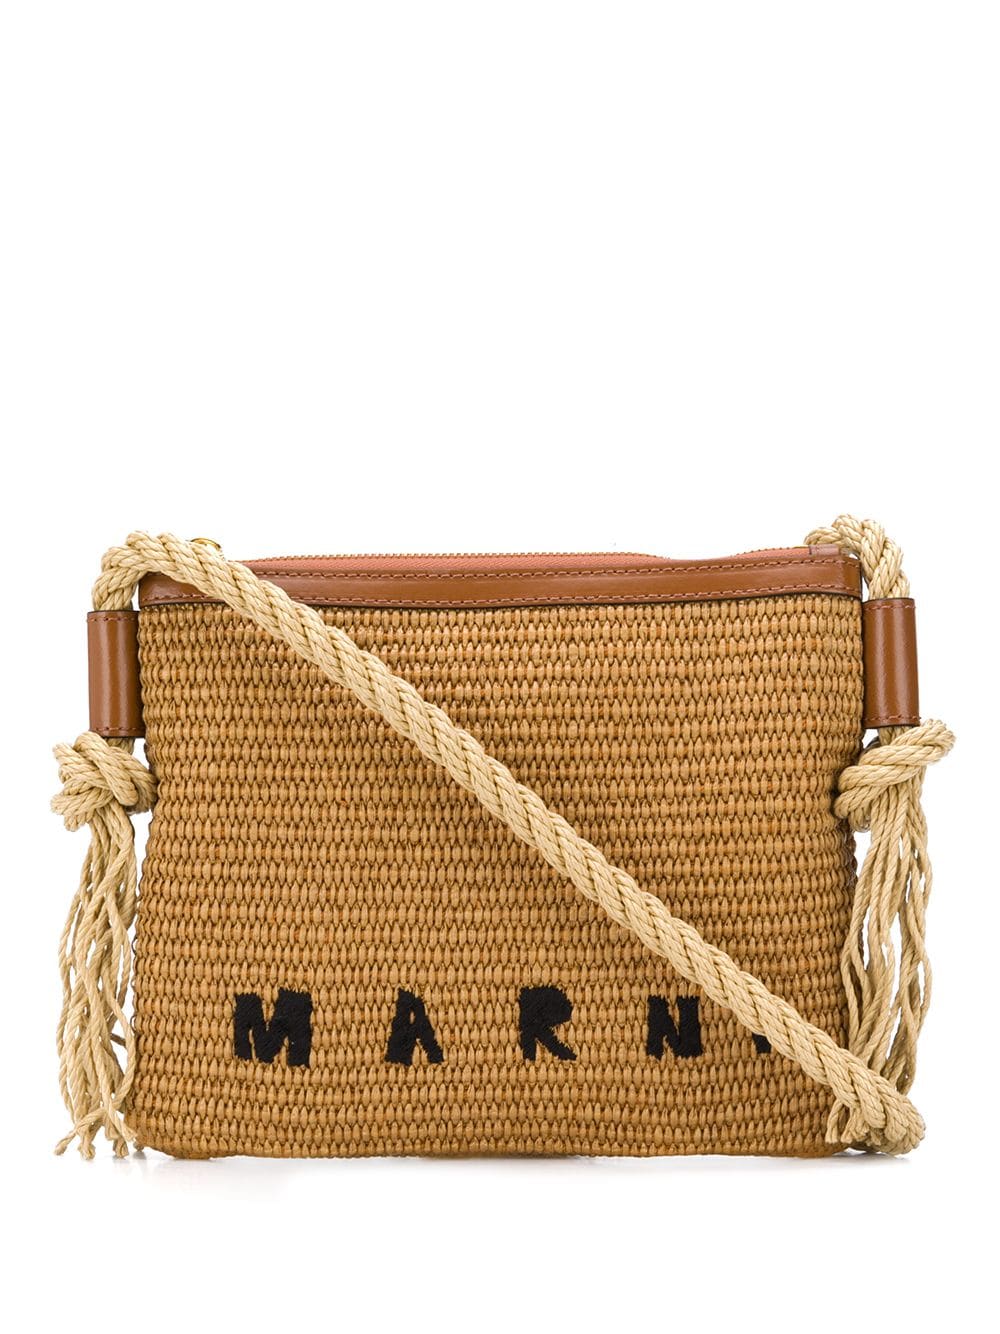 Marcel Summer bag with rope shoulder strap